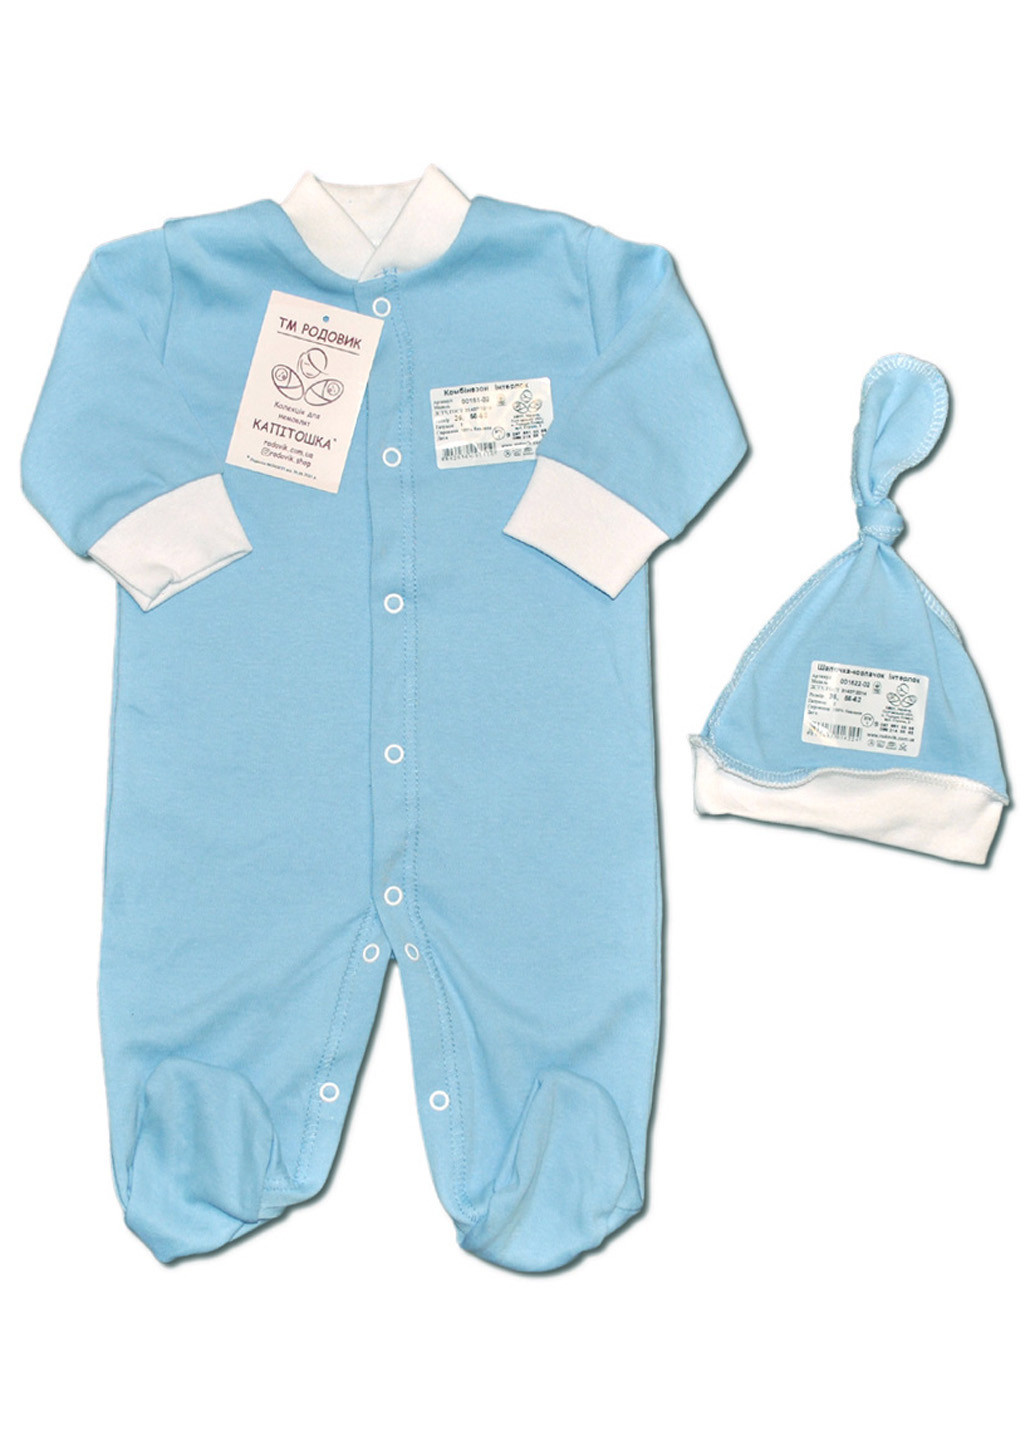 Голубой демисезонный комплект одежды для малыша человечек + чепчик колпак №3 тм колекция капитошка голубой Родовик комплект-ЧДГ